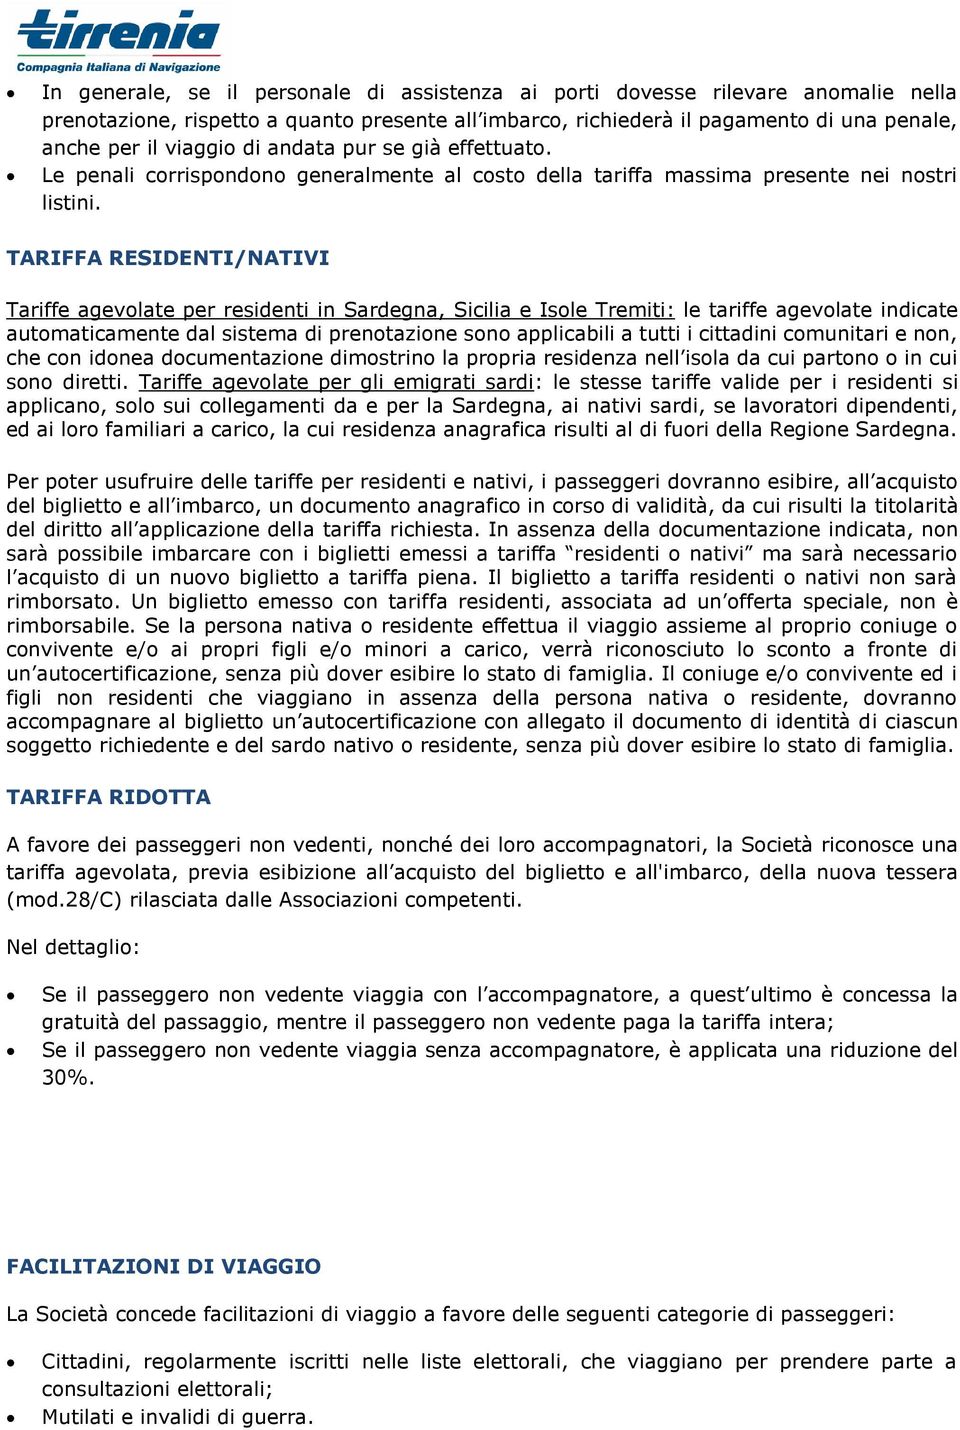 TARIFFA RESIDENTI/NATIVI Tariffe agevolate per residenti in Sardegna, Sicilia e Isole Tremiti: le tariffe agevolate indicate automaticamente dal sistema di prenotazione sono applicabili a tutti i